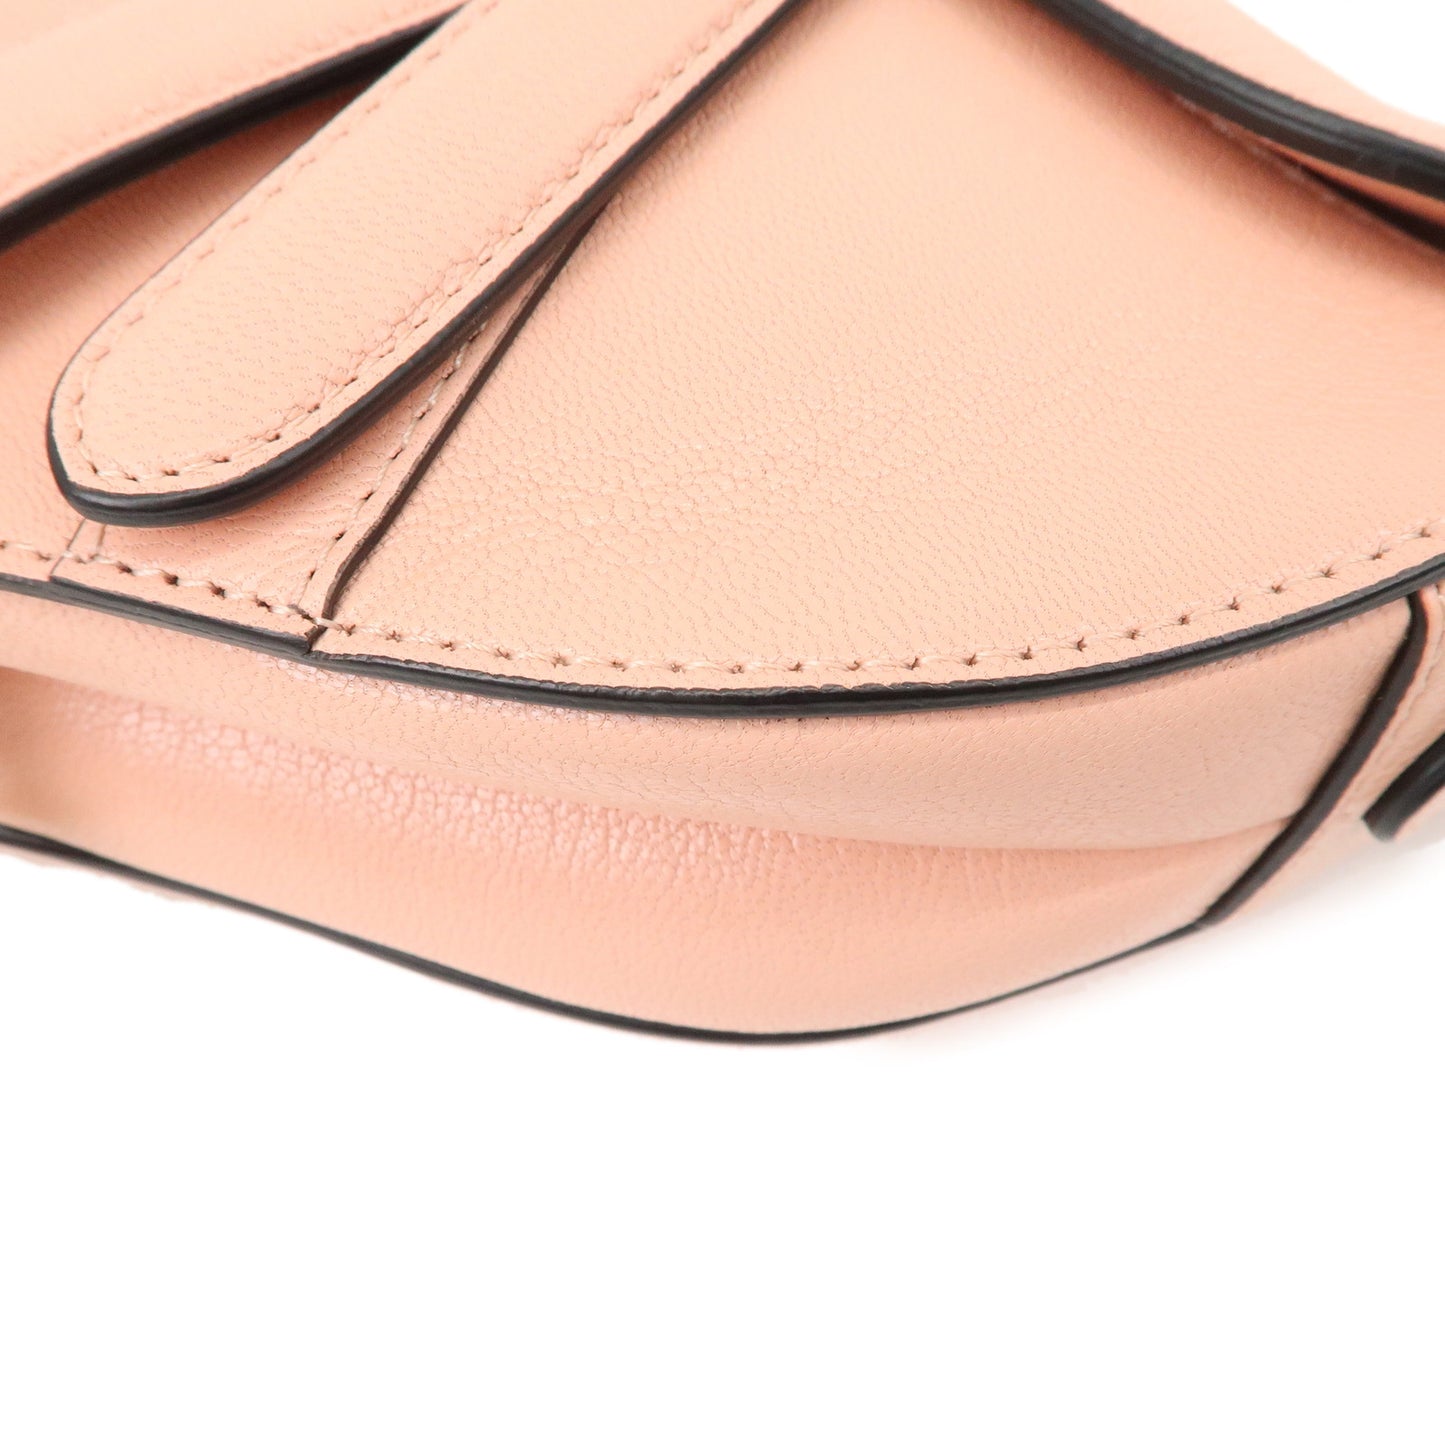 Christian Dior Saddle Bag Leather Mini Shoulder Bag Pink